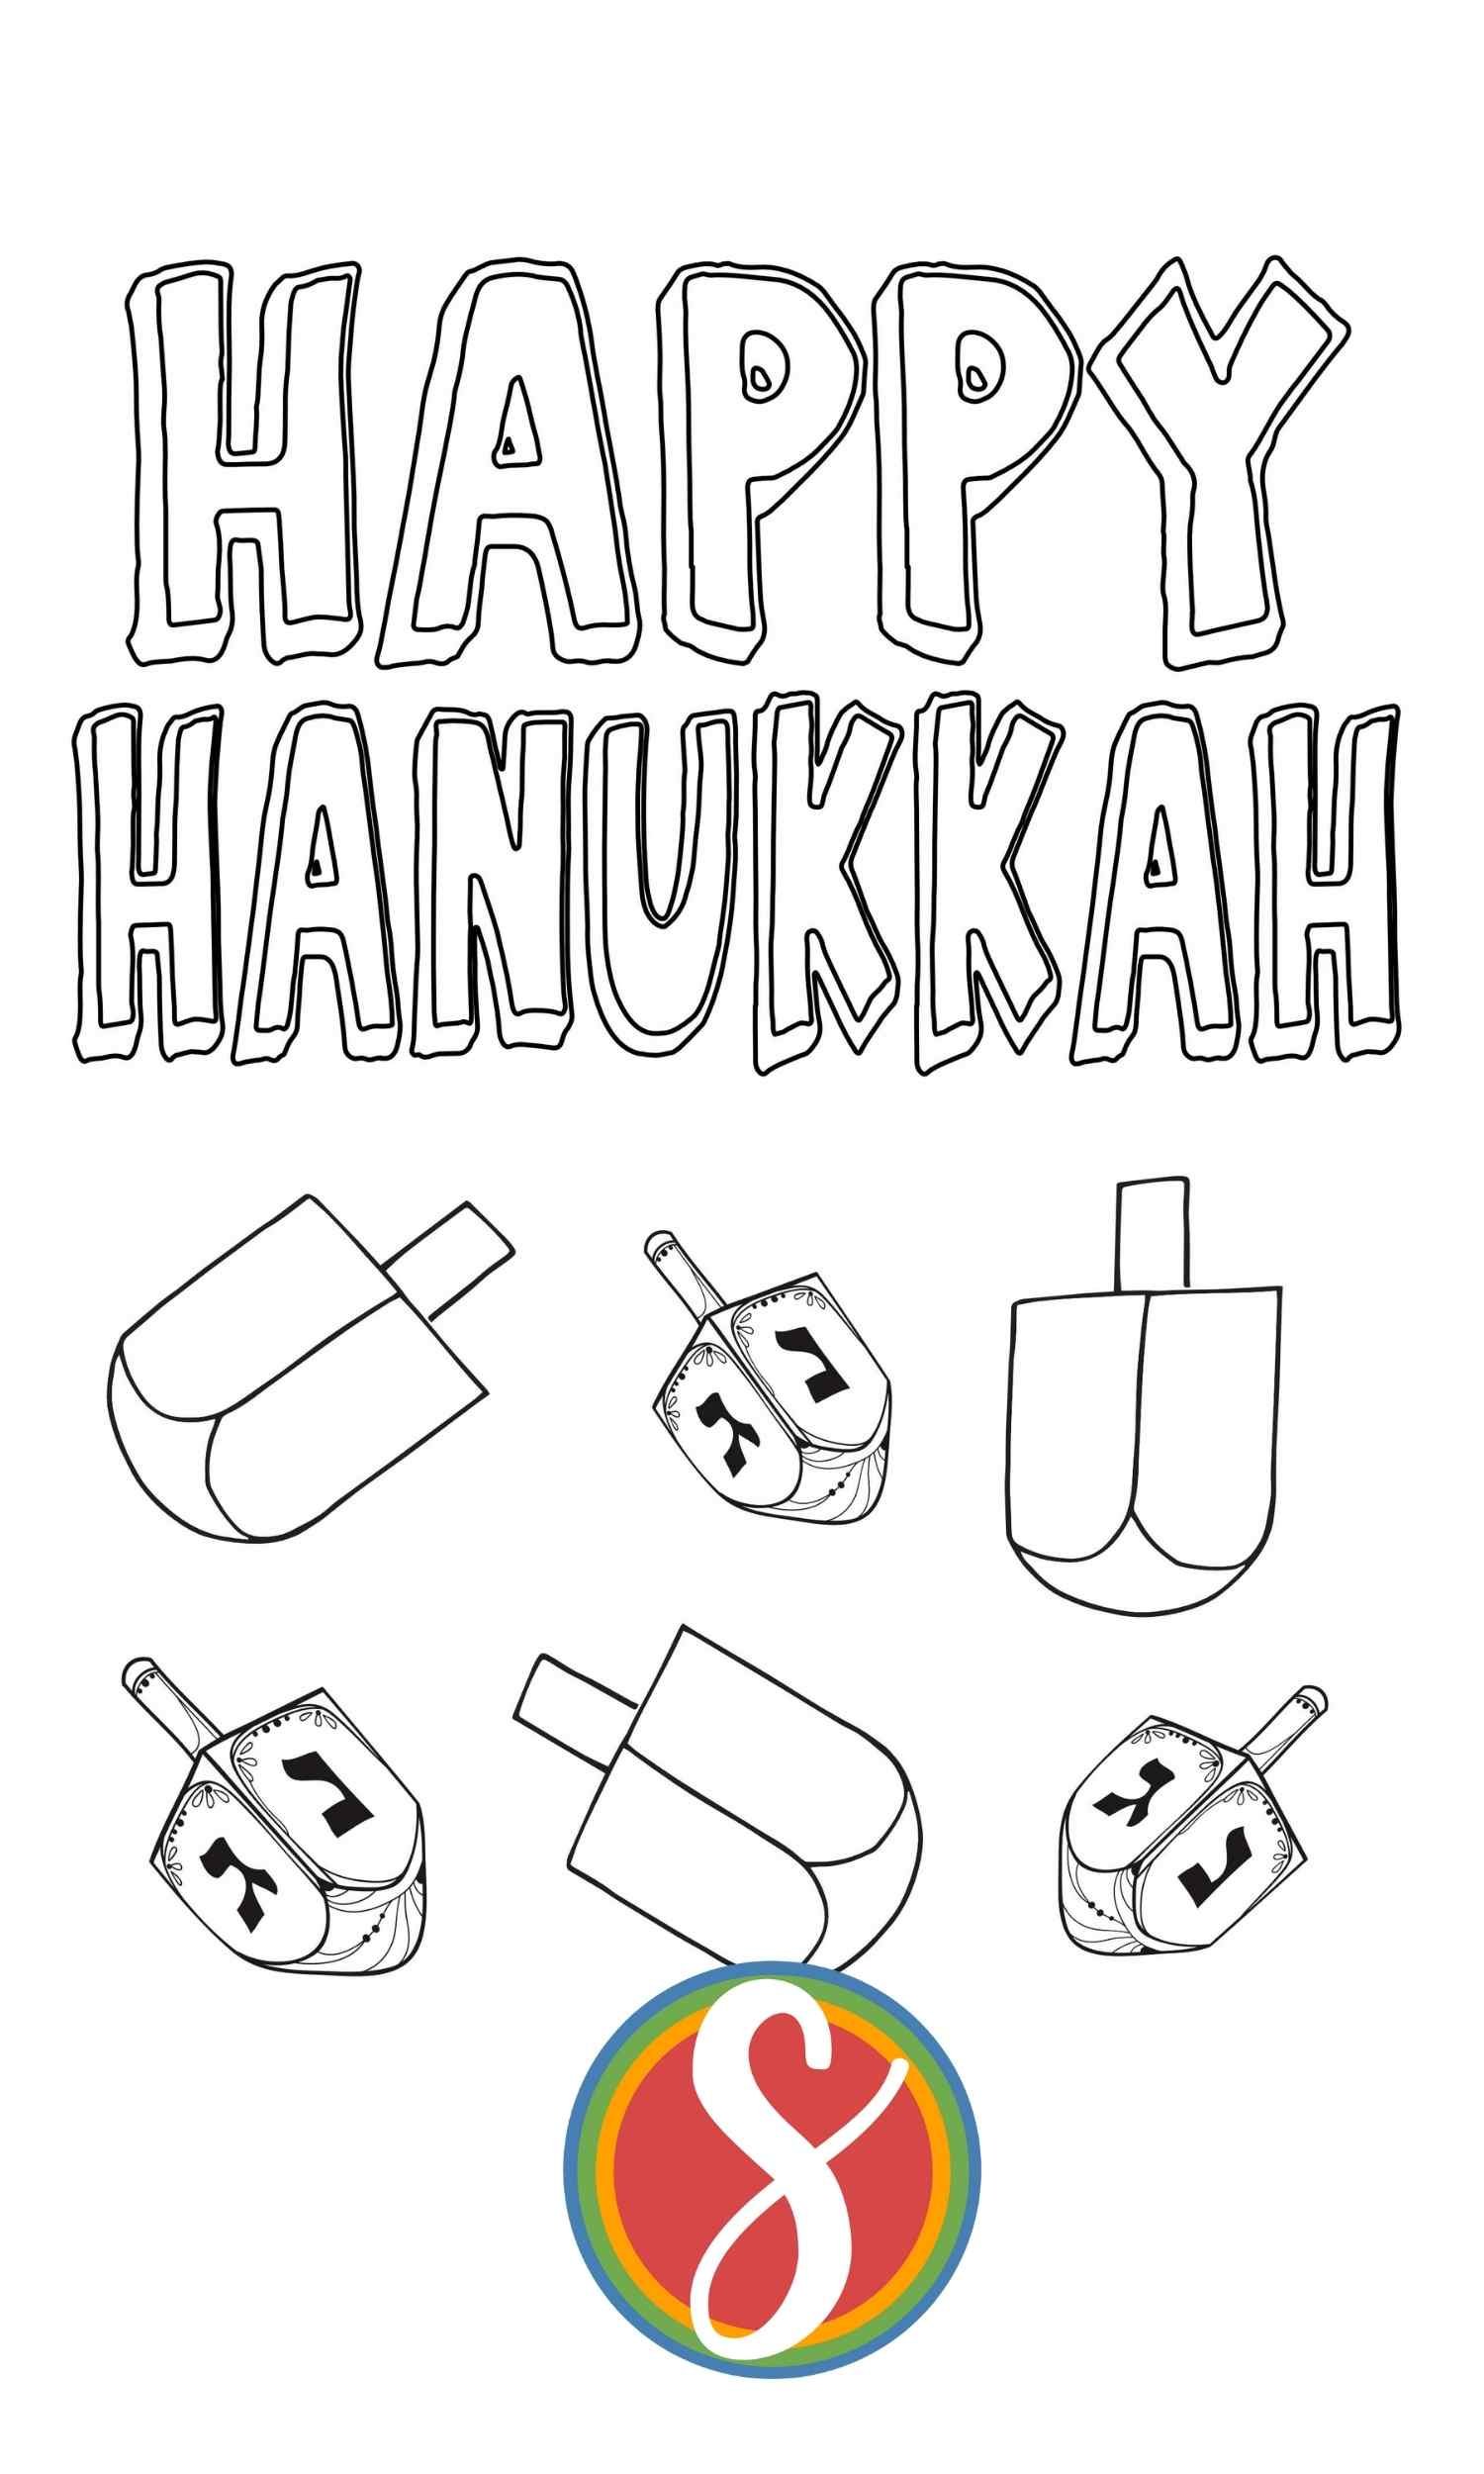 Happy Hanukkah coloring page with 6 dreidels